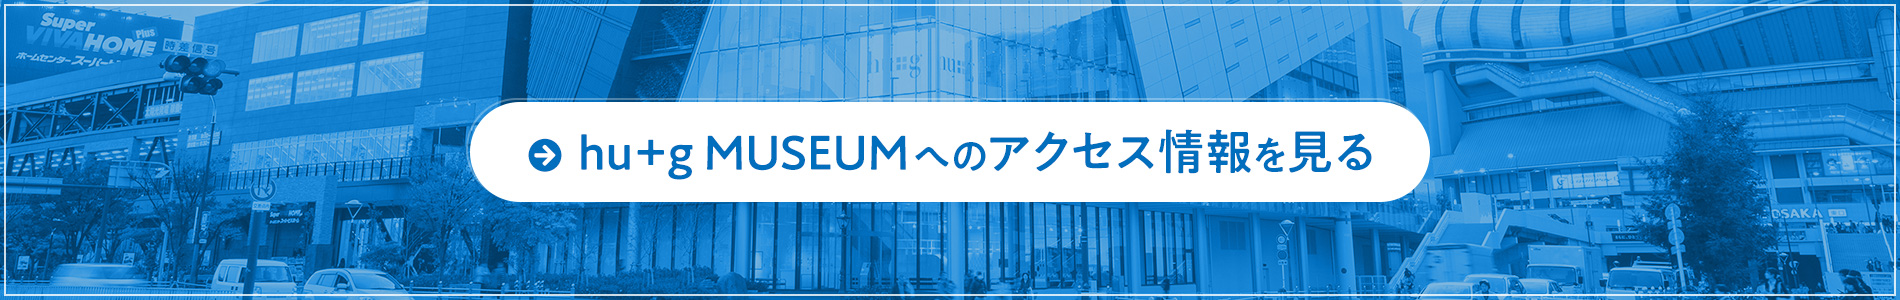 hu+g MUSEUMへのアクセス情報を見る